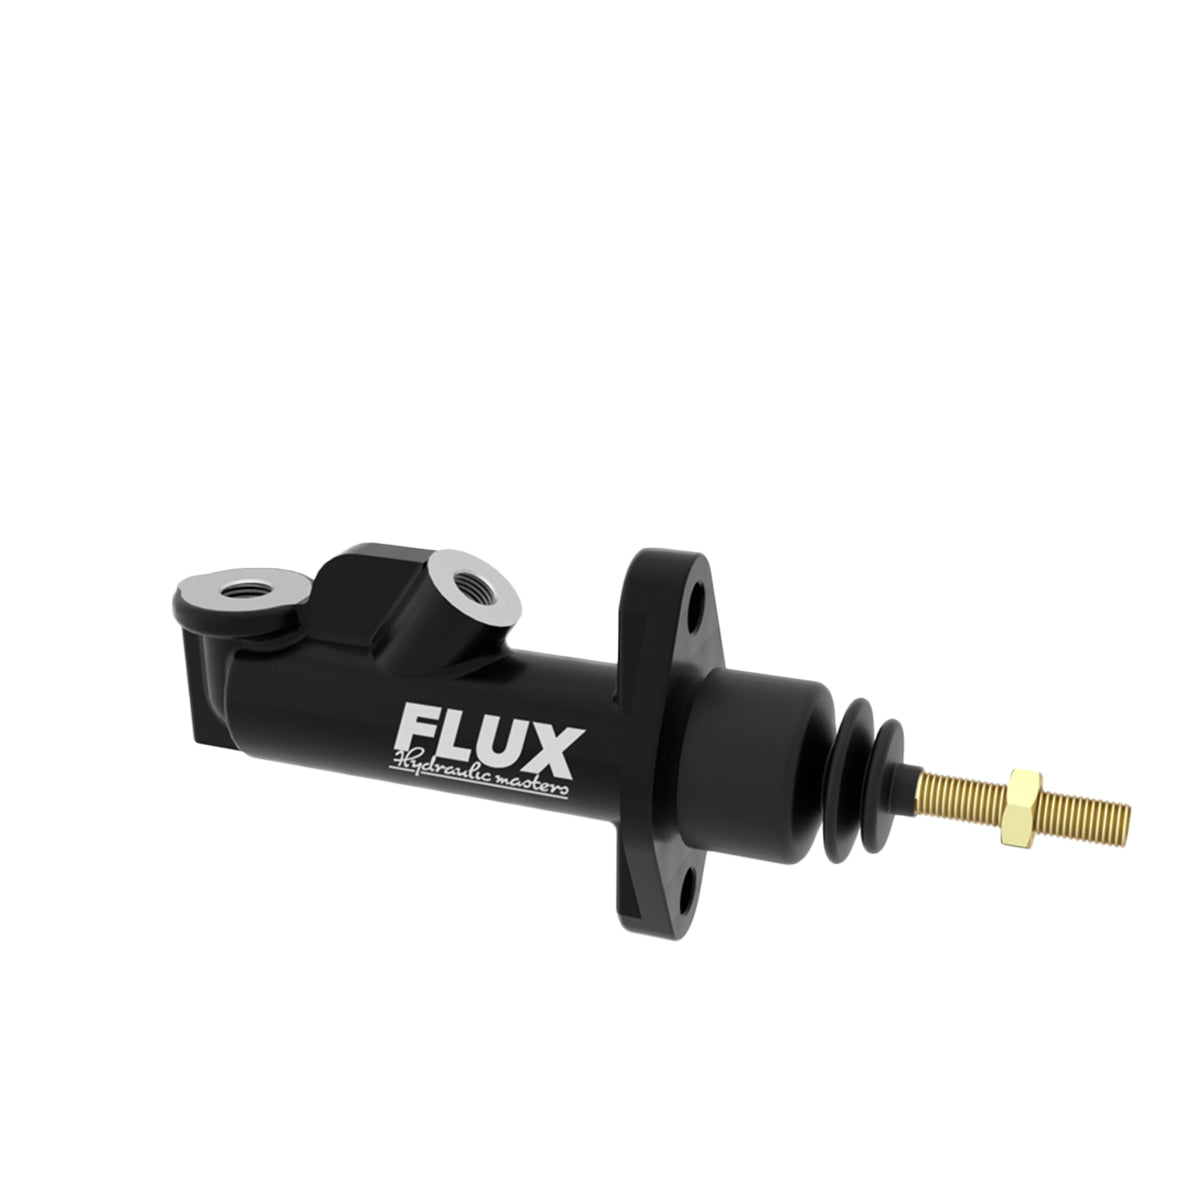 Flux Hydraulic Master 7/8 インラインマスターシリンダー